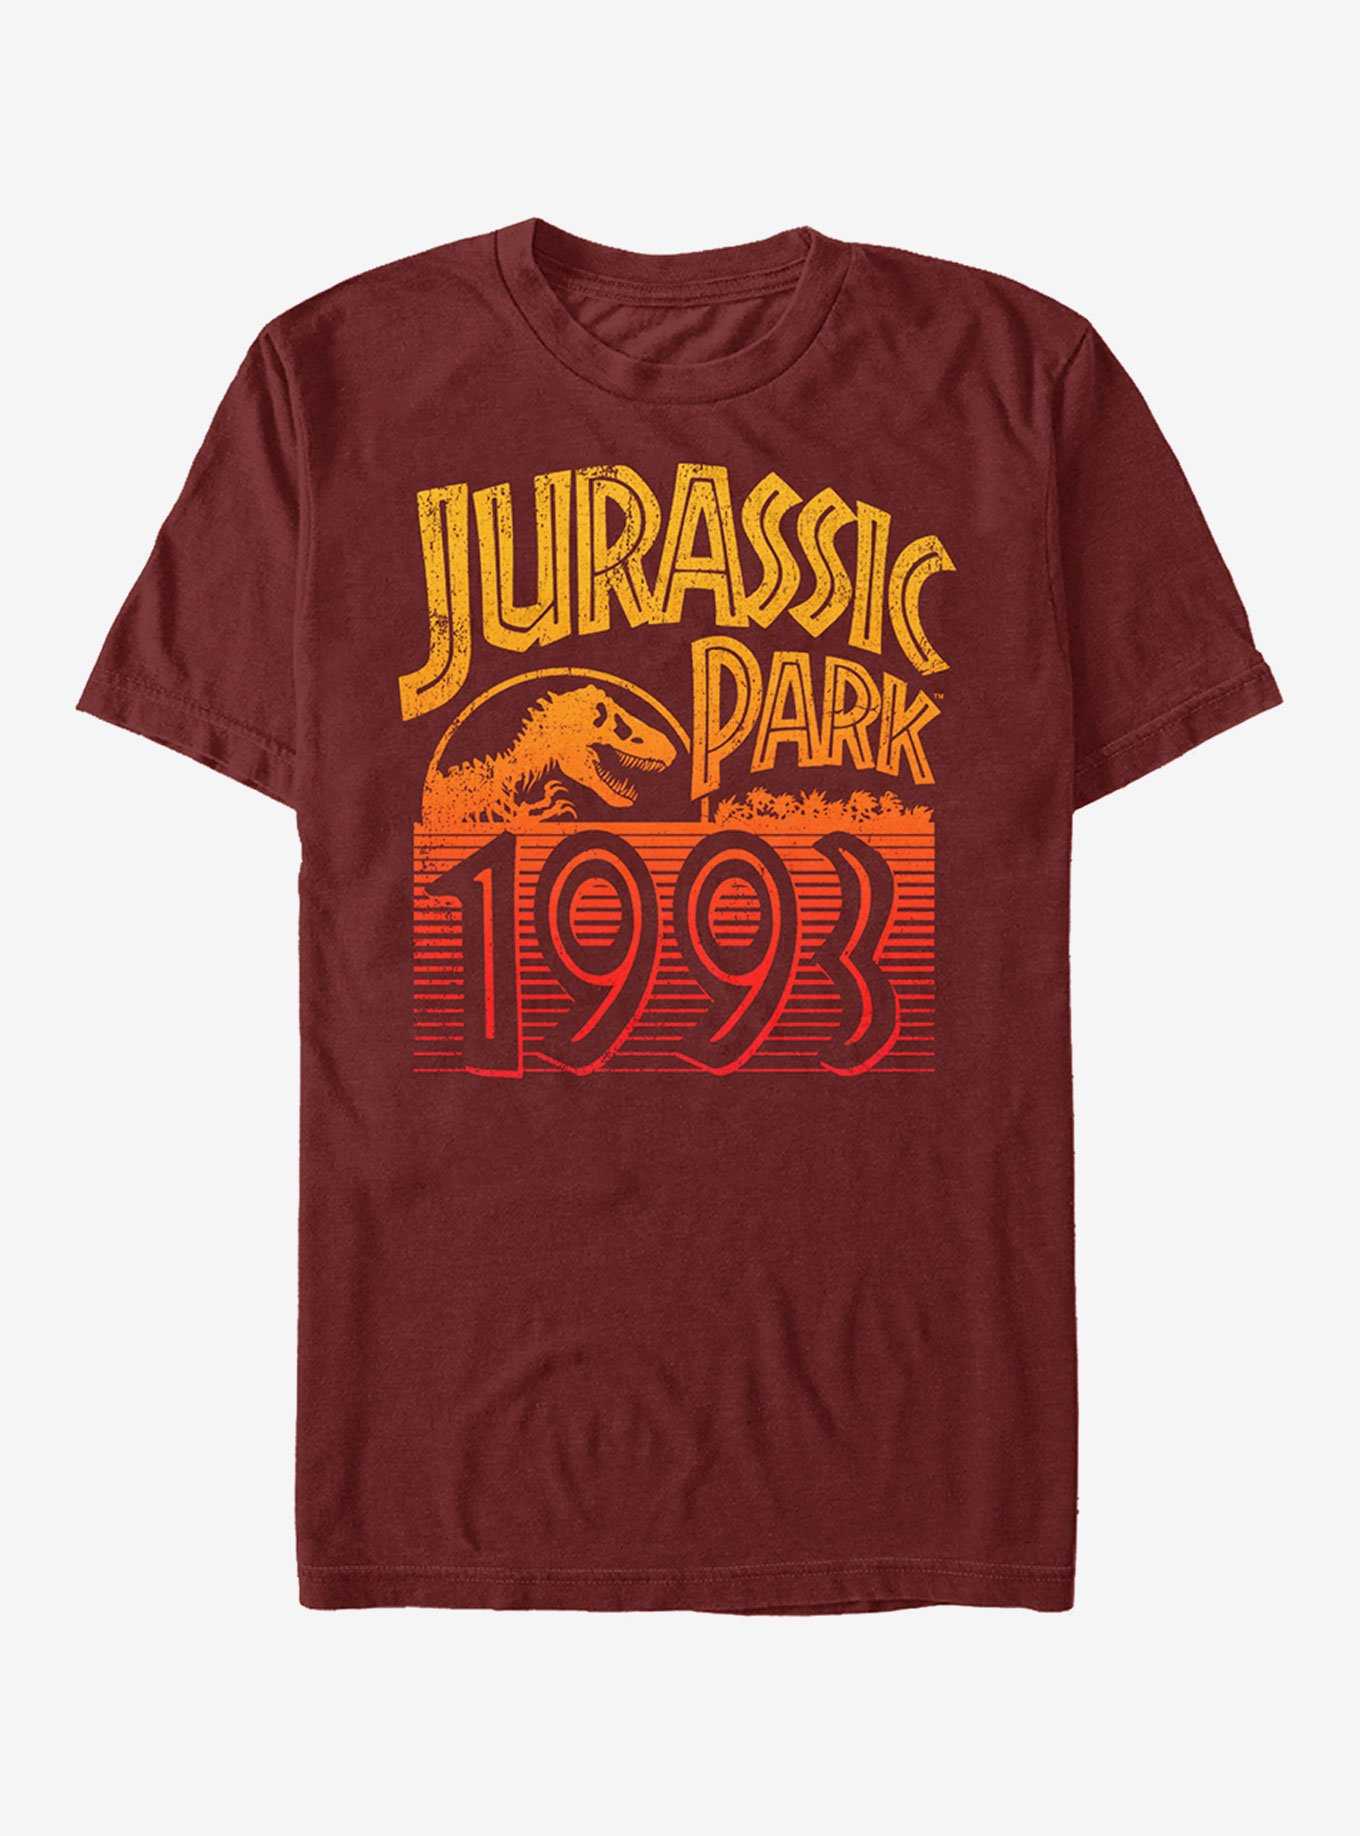 Jurassic Park Retro 1993 T-Shirt, , hi-res